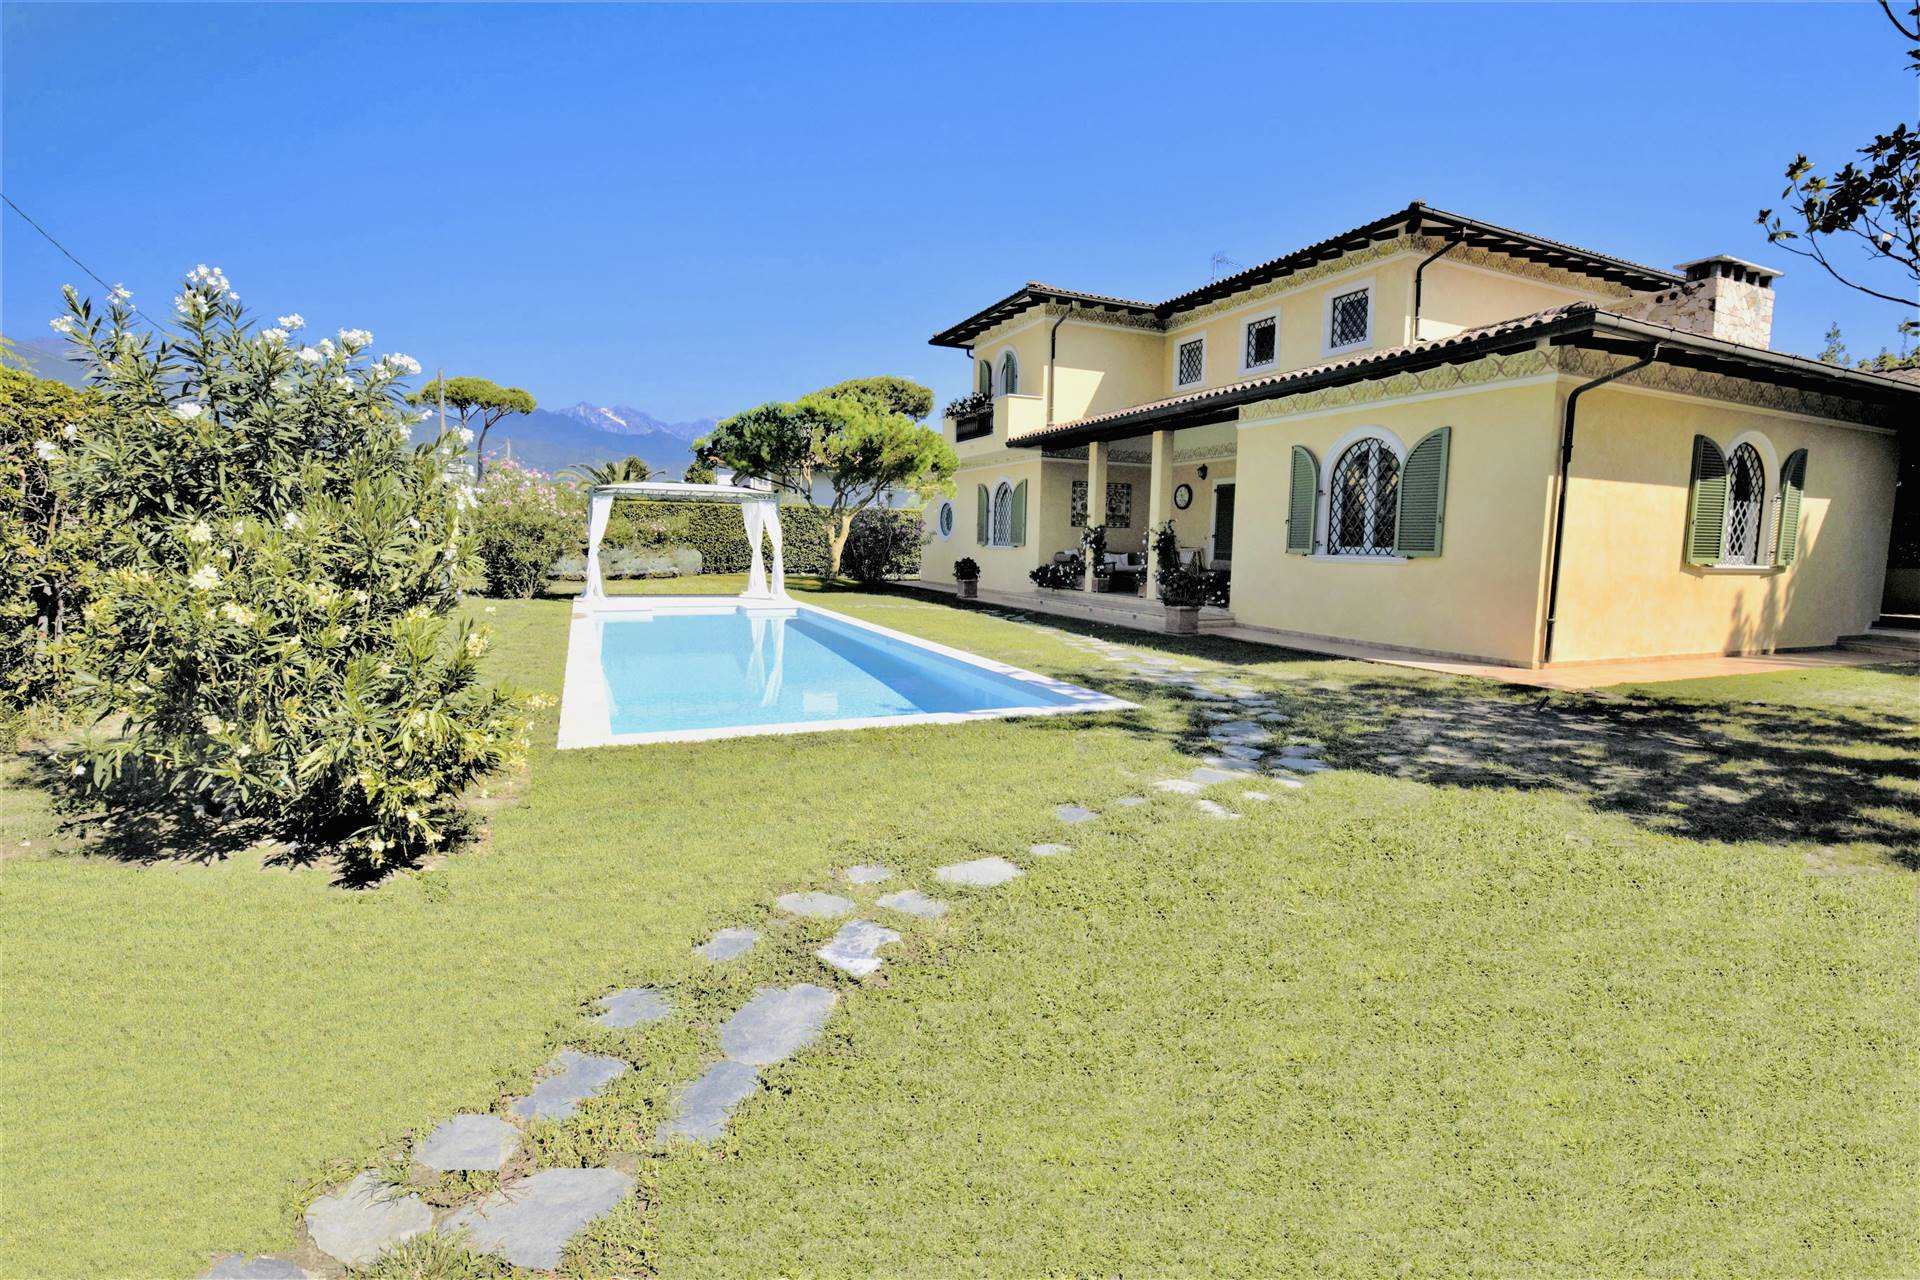 Villa in vacanza a Forte Dei Marmi Lucca Vittoria Apuana